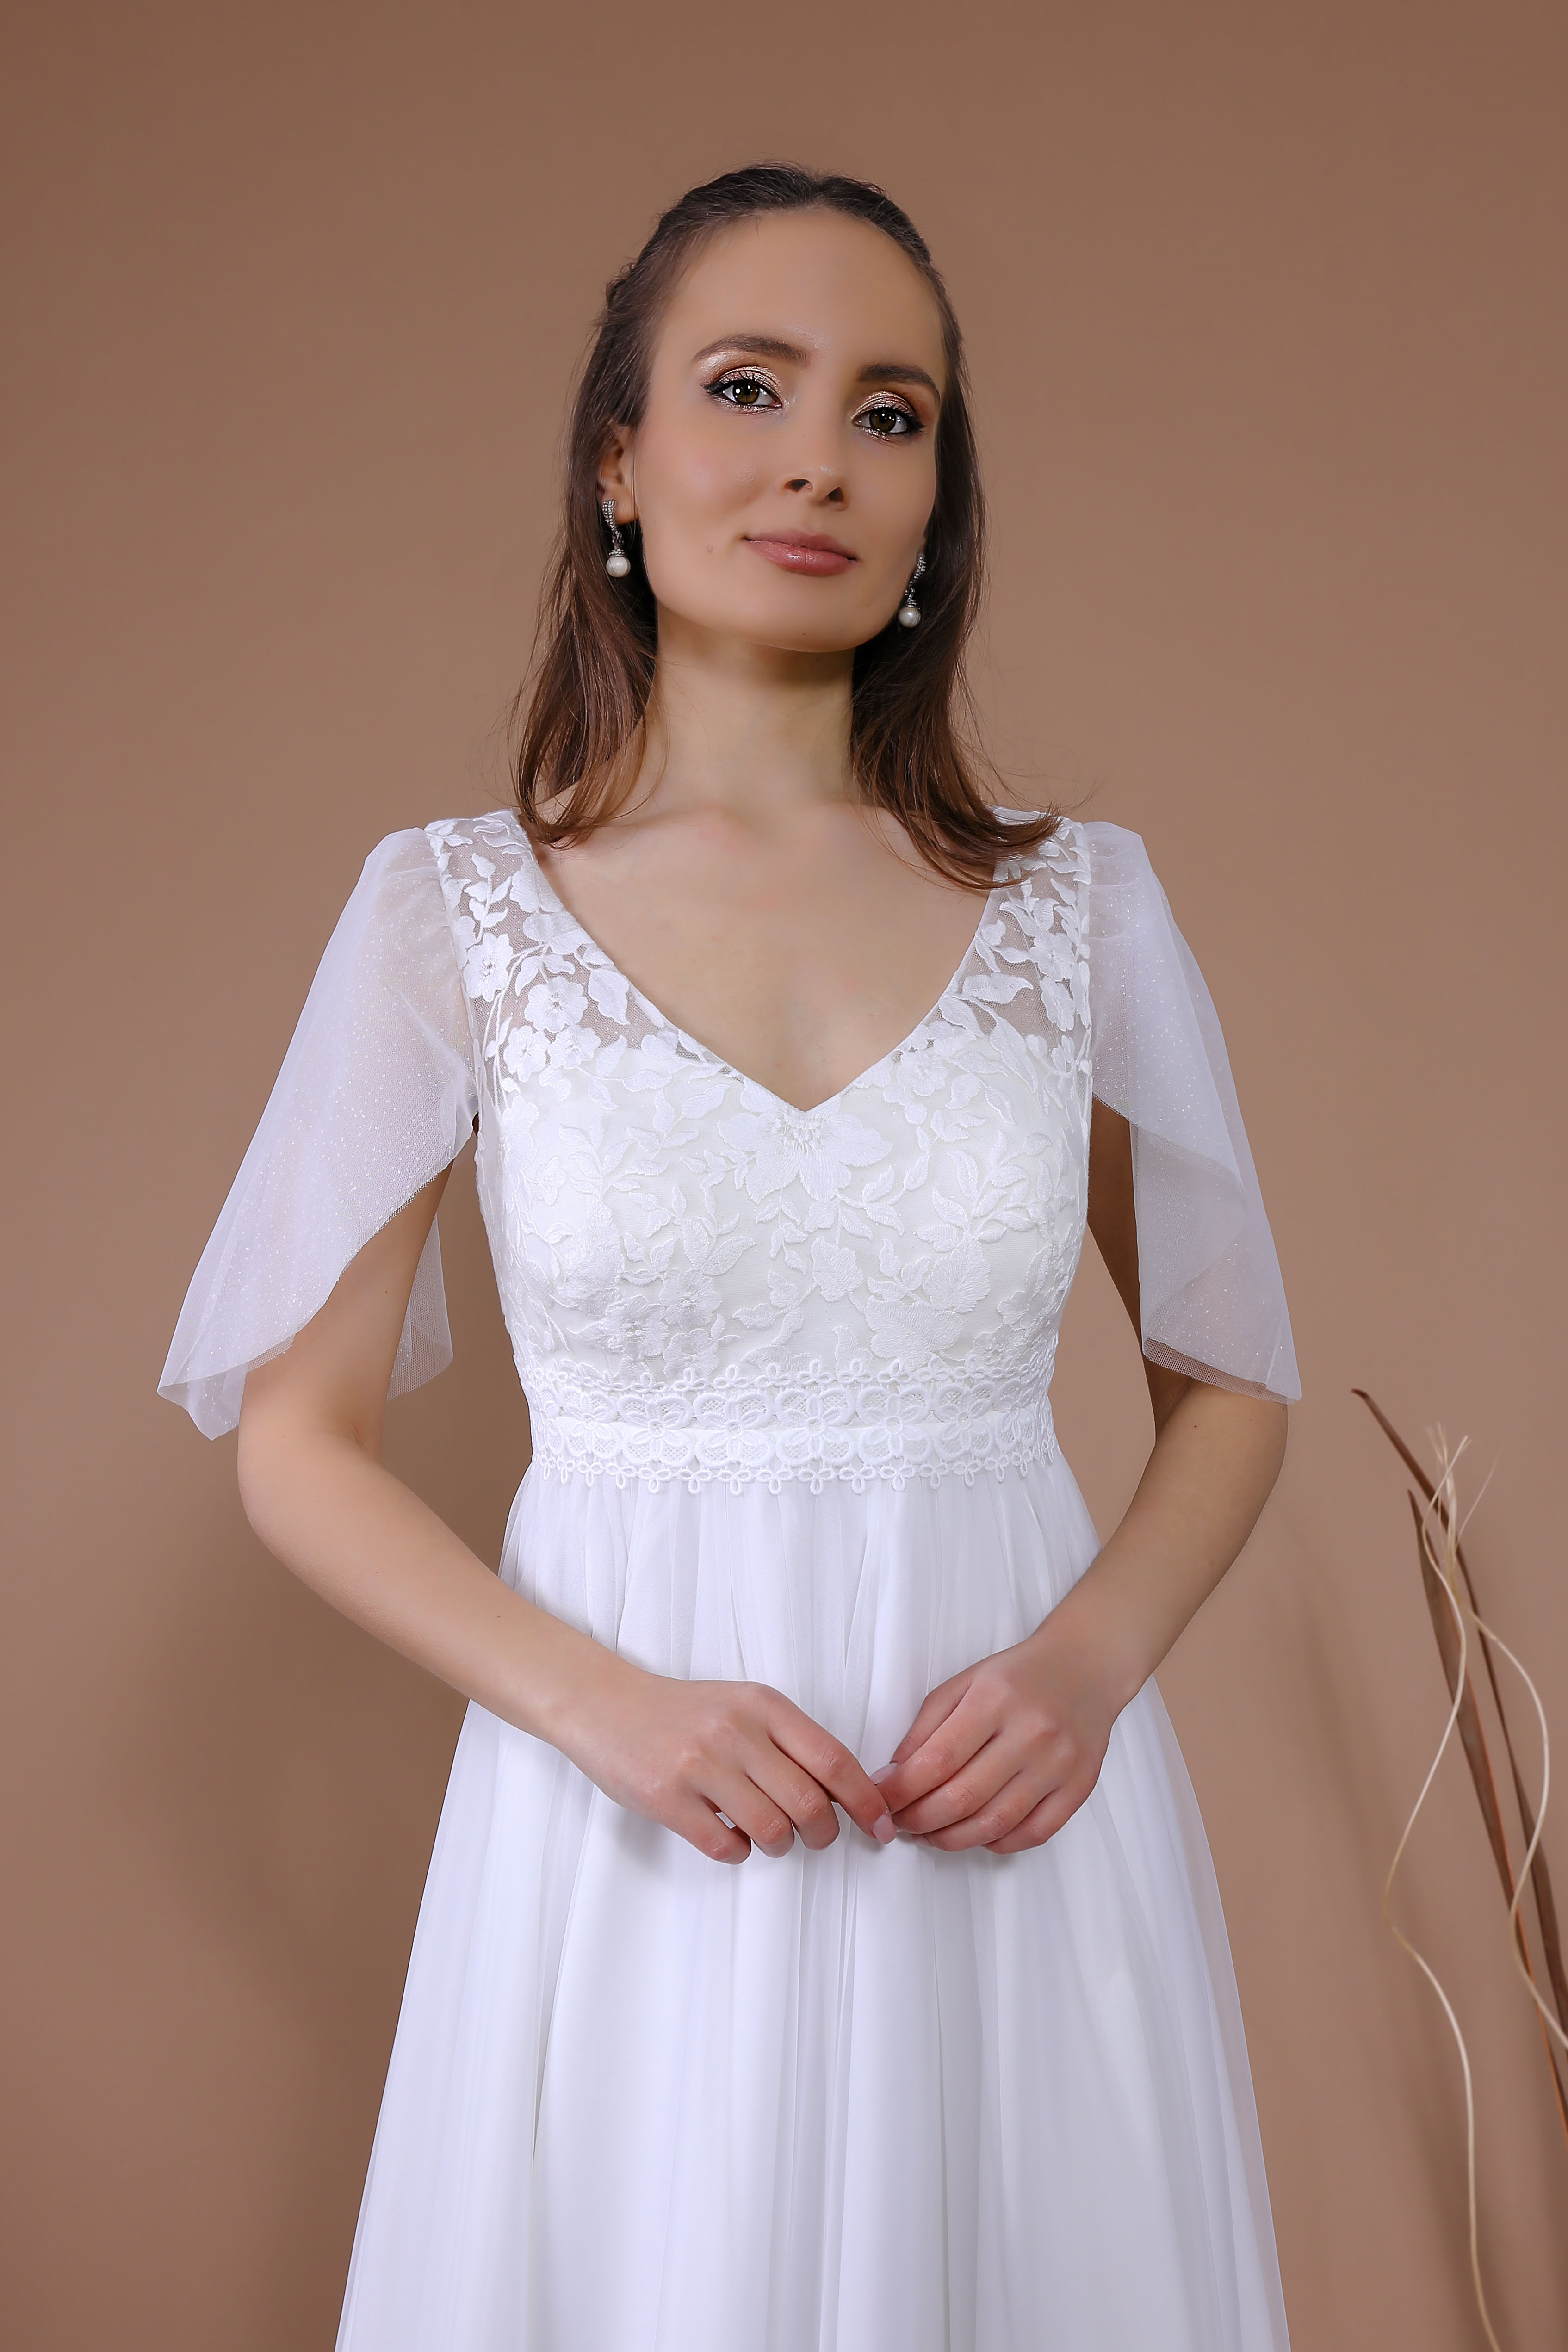 Schantal Brautkleid aus der Kollektion „Traum“, Modell 14108. Foto 4